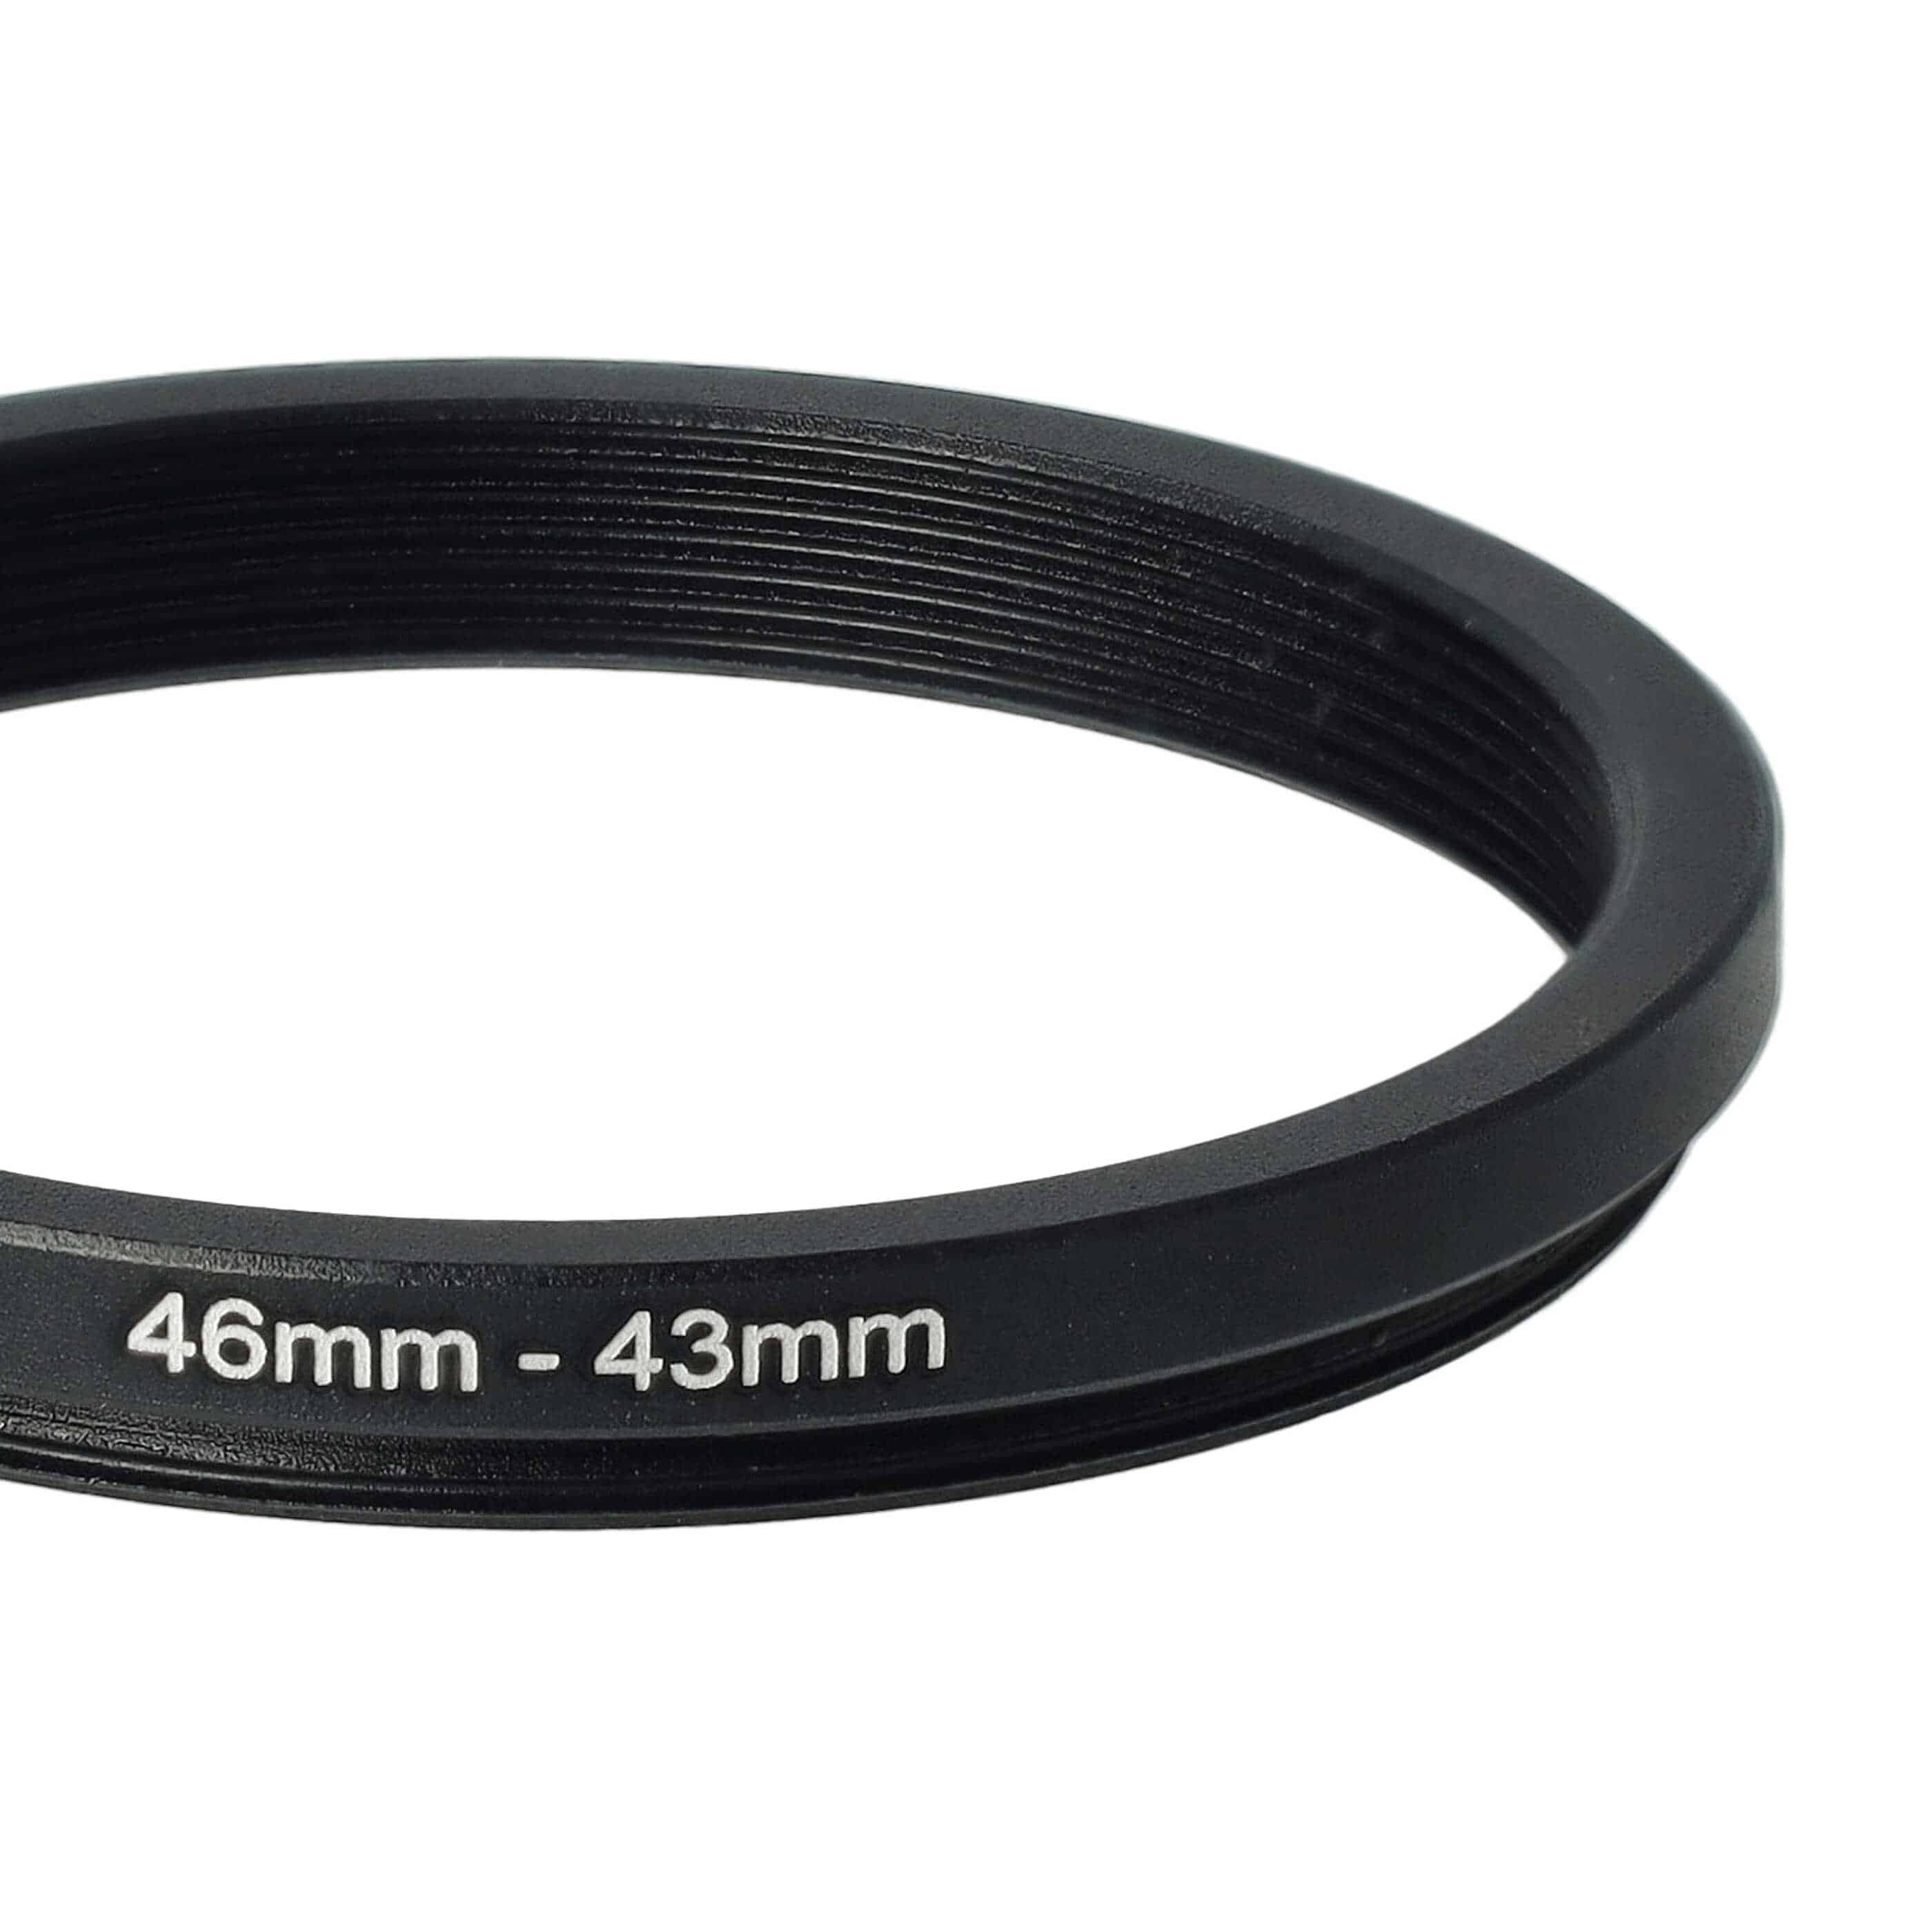 Anillo adaptador Step Down de 46 mm a 43 mm para objetivo de la cámara - Adaptador de filtro, metal, negro